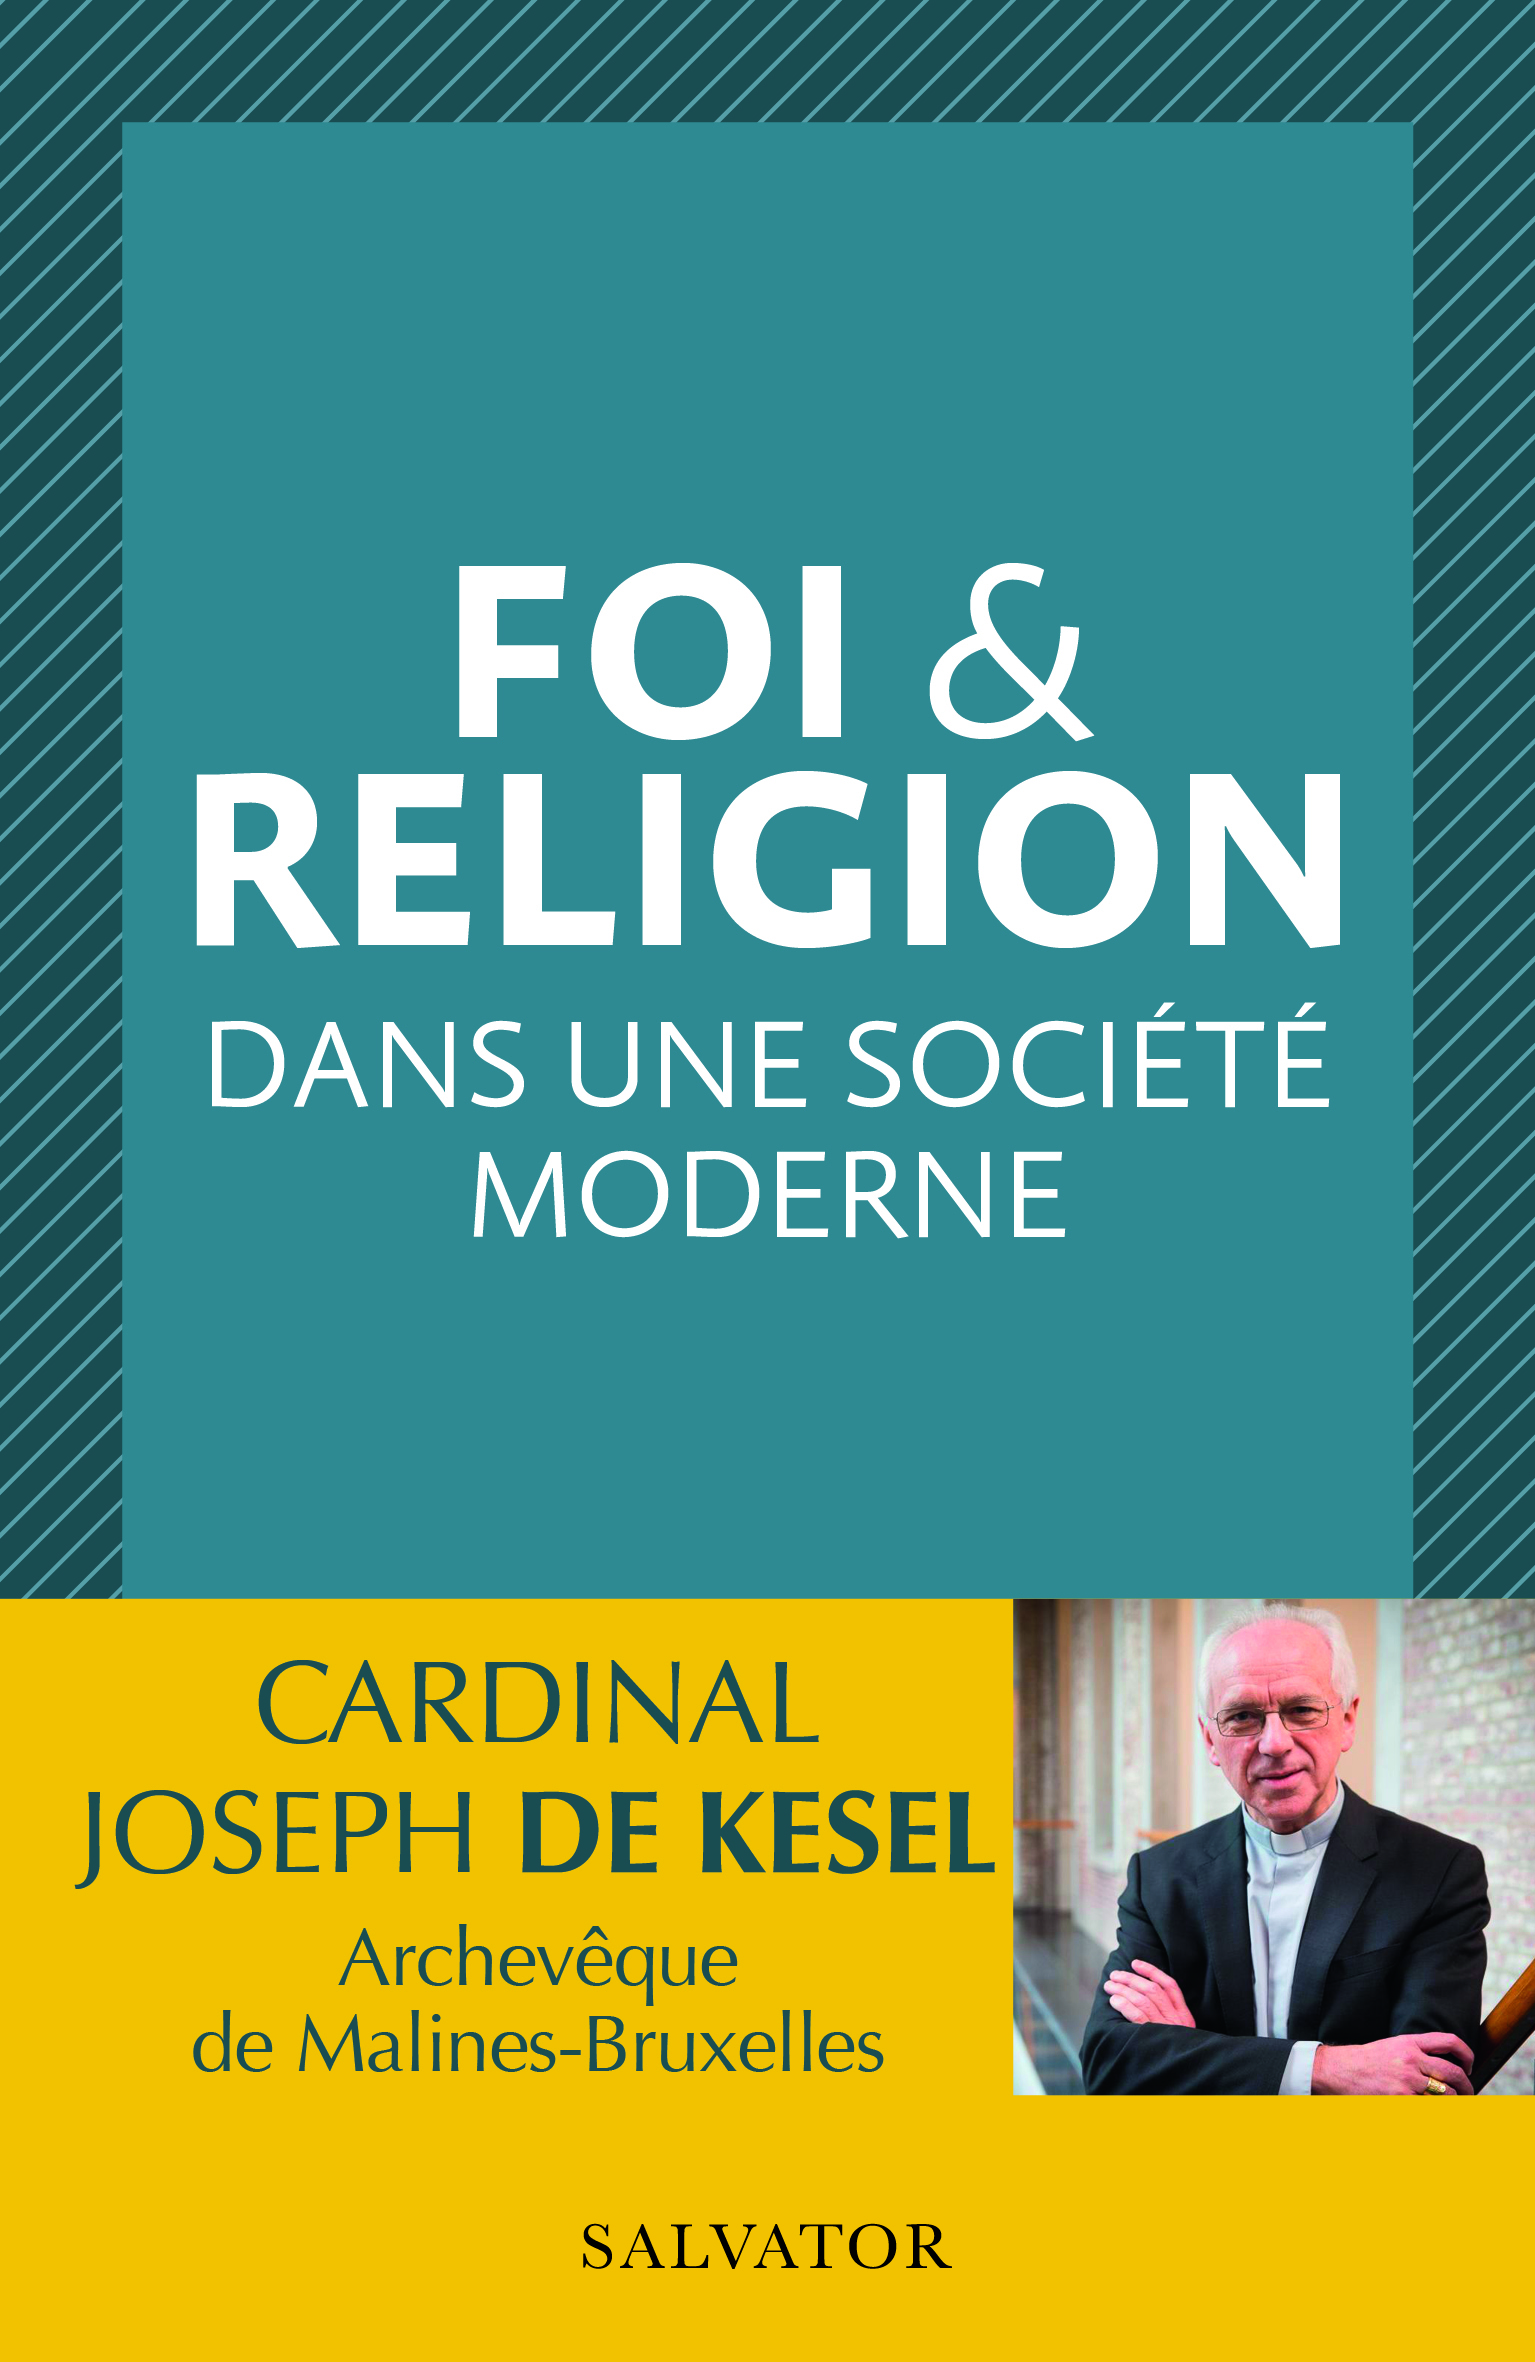  FOI & RELIGION DANS UNE SOCIÉTÉ MODERNE par Joseph de Kesel éditions Salvator